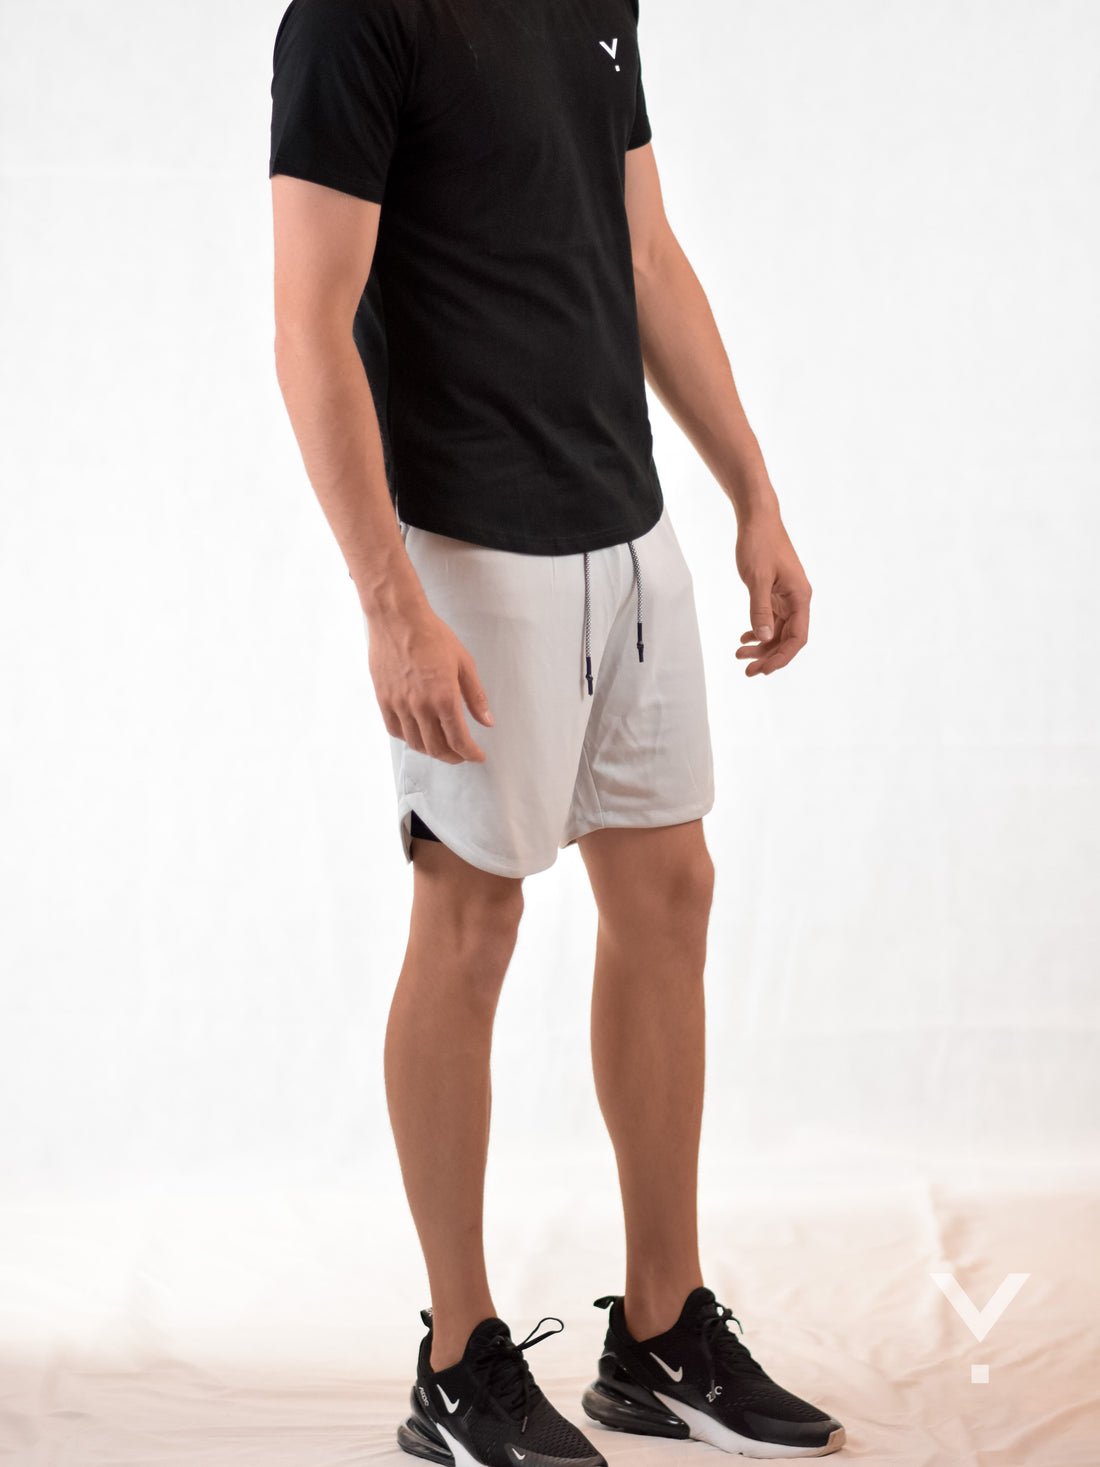 Velocity Shorts Light Grey - Mens Shorts | AVAYOS